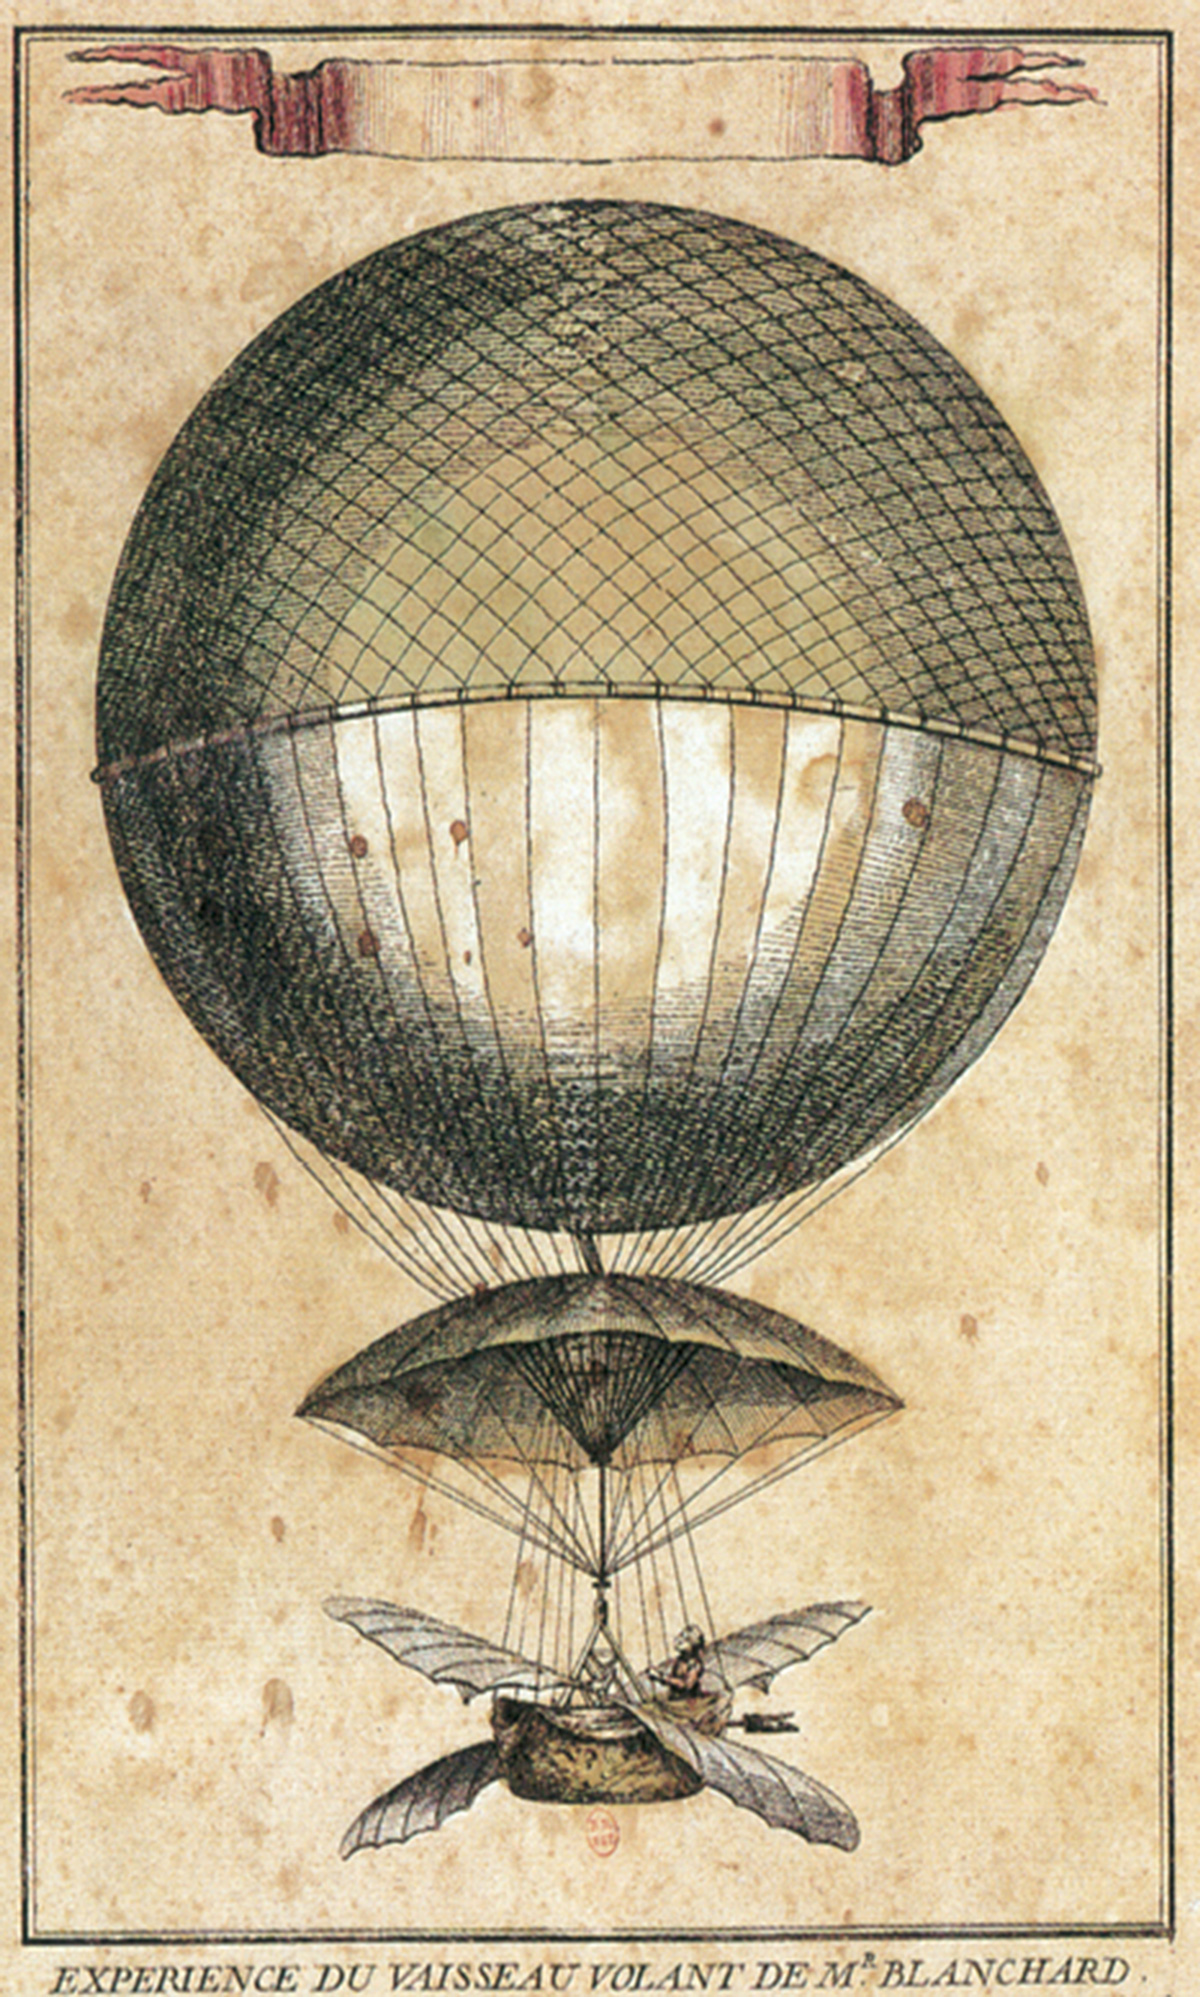 An illustration of Jean-Pierre Blanchard’s spherical hydrogen balloon.